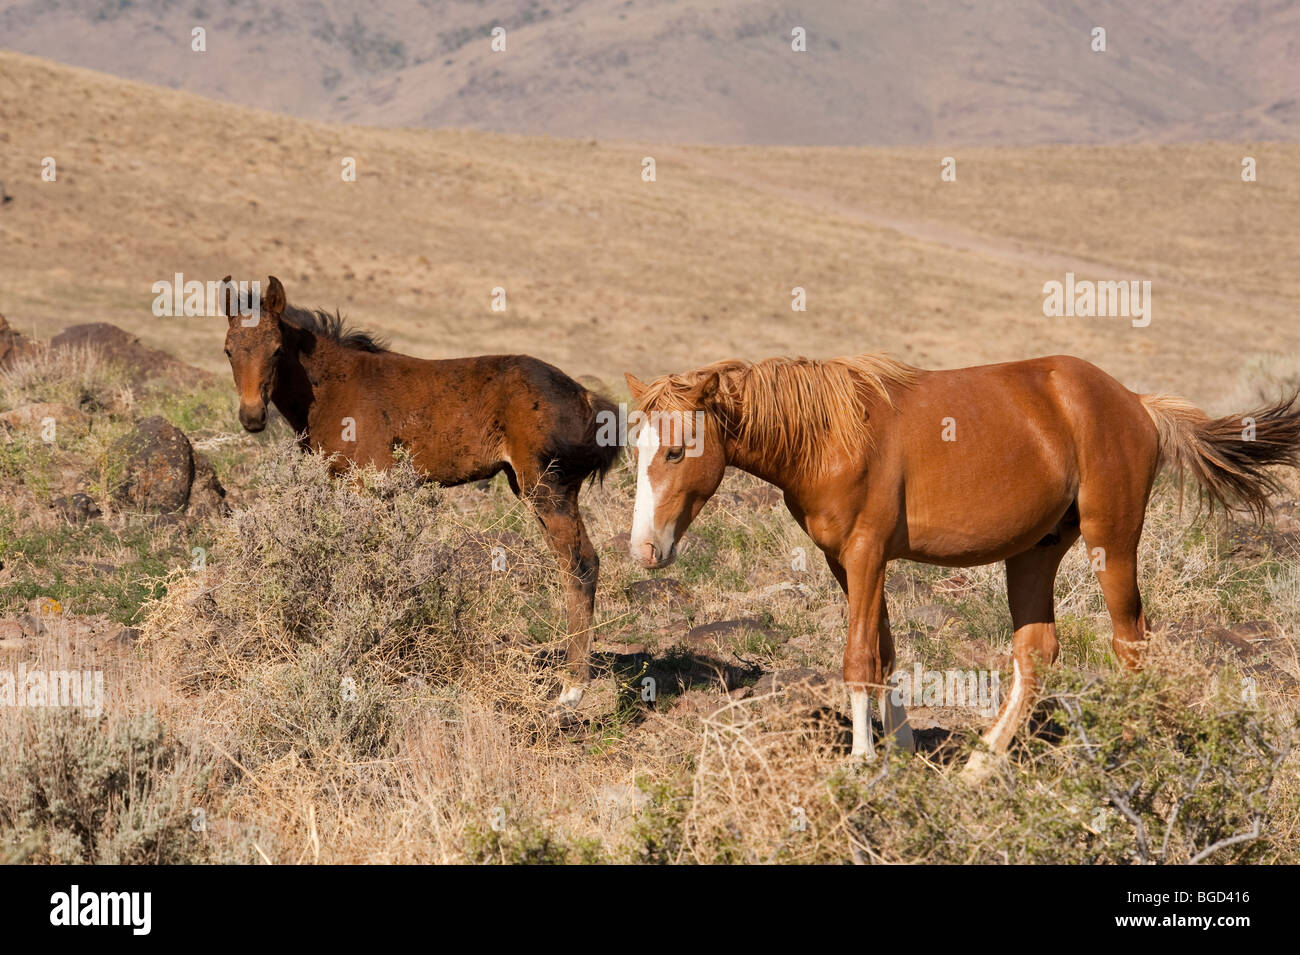 Wild Horses Equus ferus caballus Nevada Stock Photo